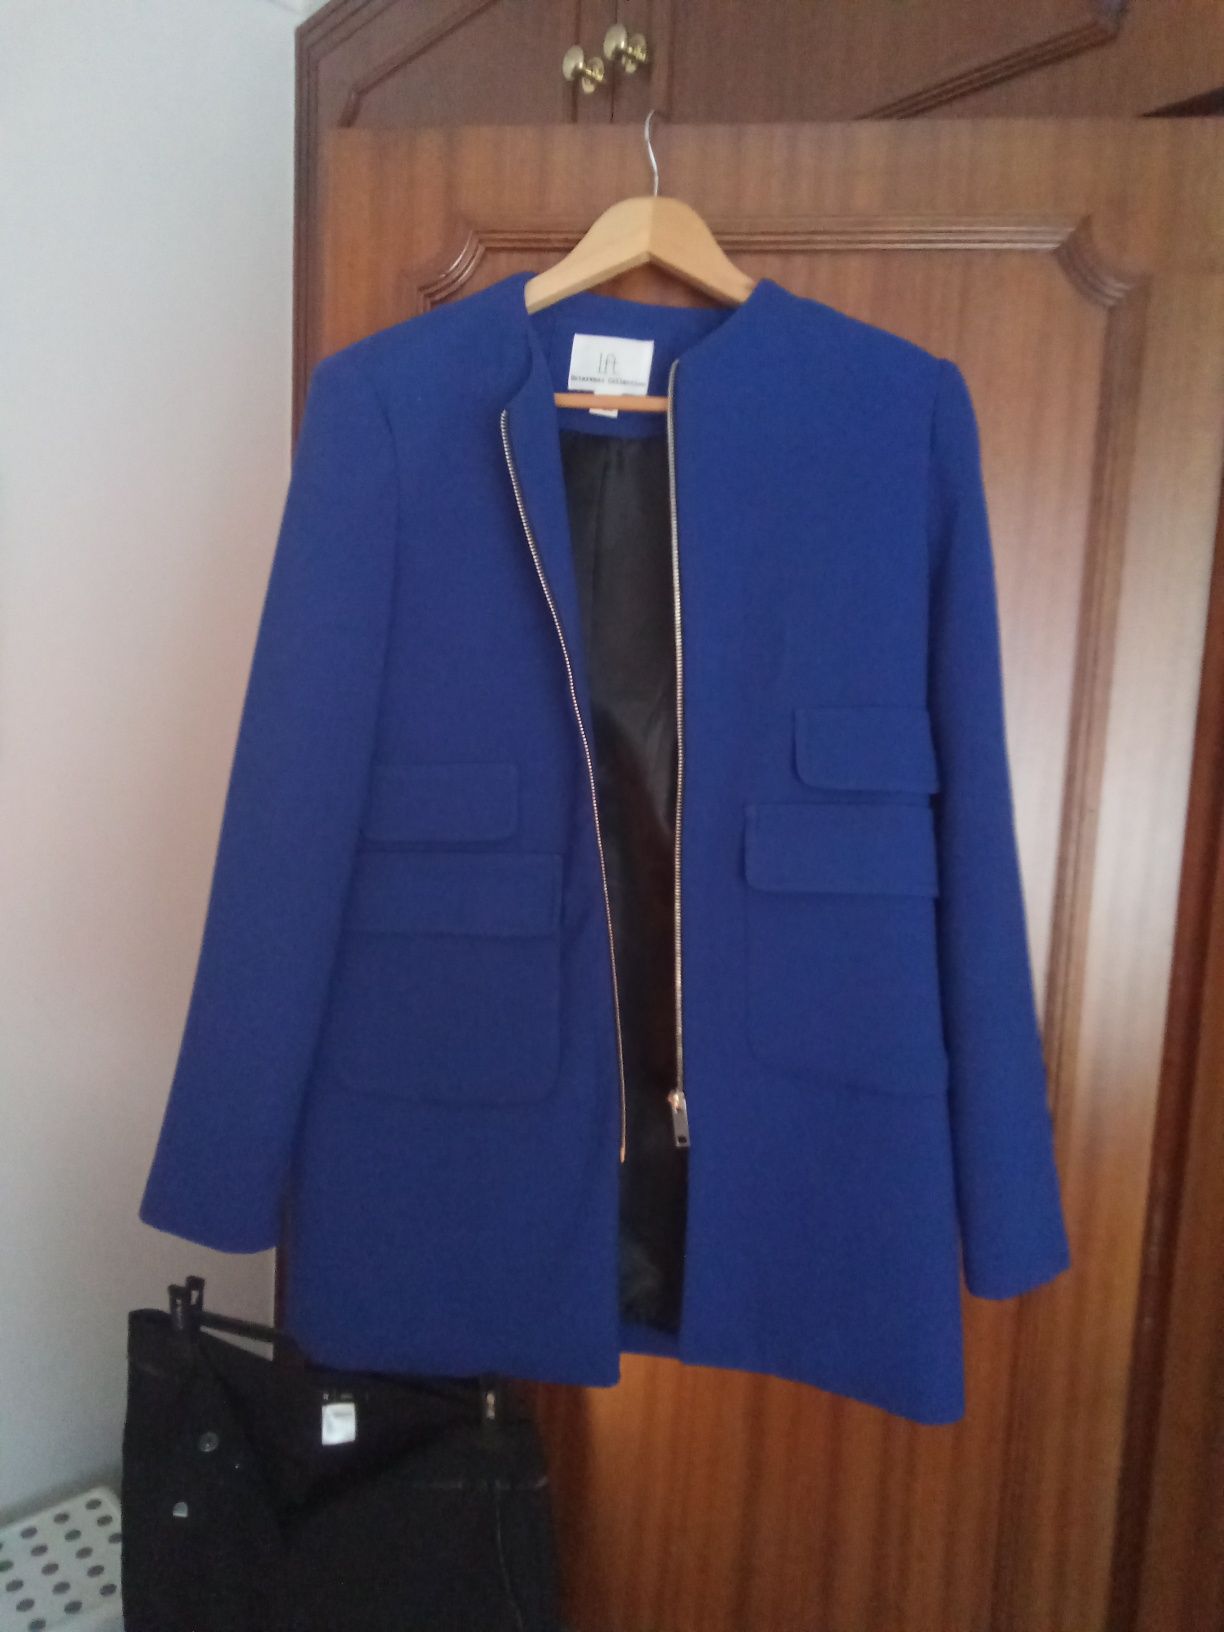 Fato de senhora três peçast e um casaco azulão em perfeitas condições.